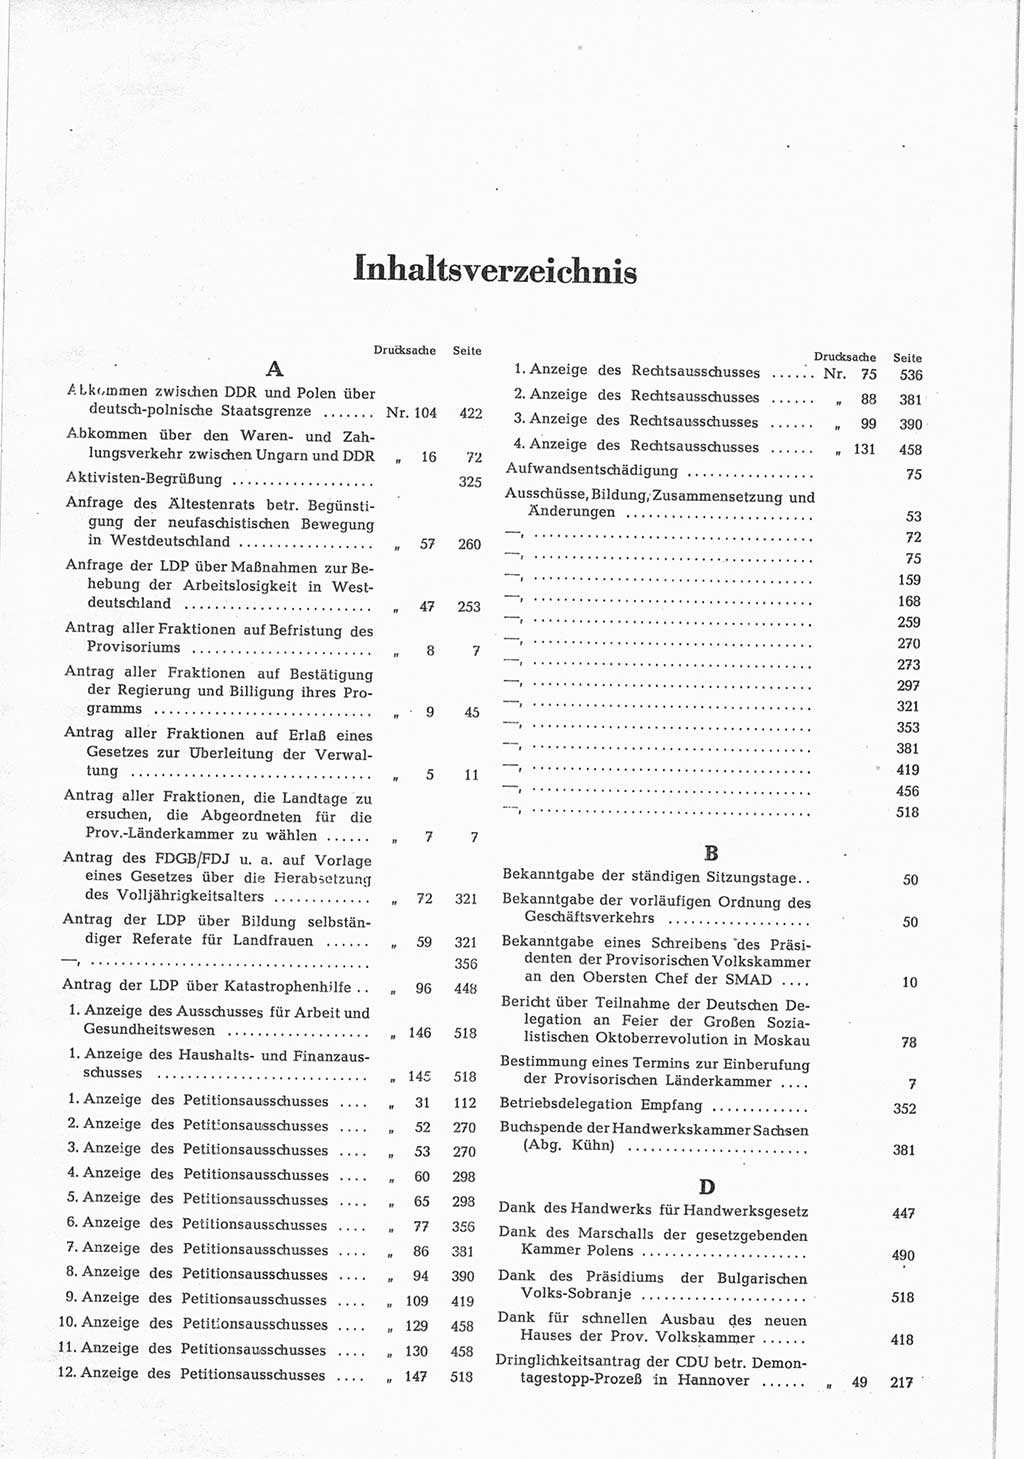 Provisorische Volkskammer (VK) der Deutschen Demokratischen Republik (DDR) 1949-1950, Dokument 847 (Prov. VK DDR 1949-1950, Dok. 847)